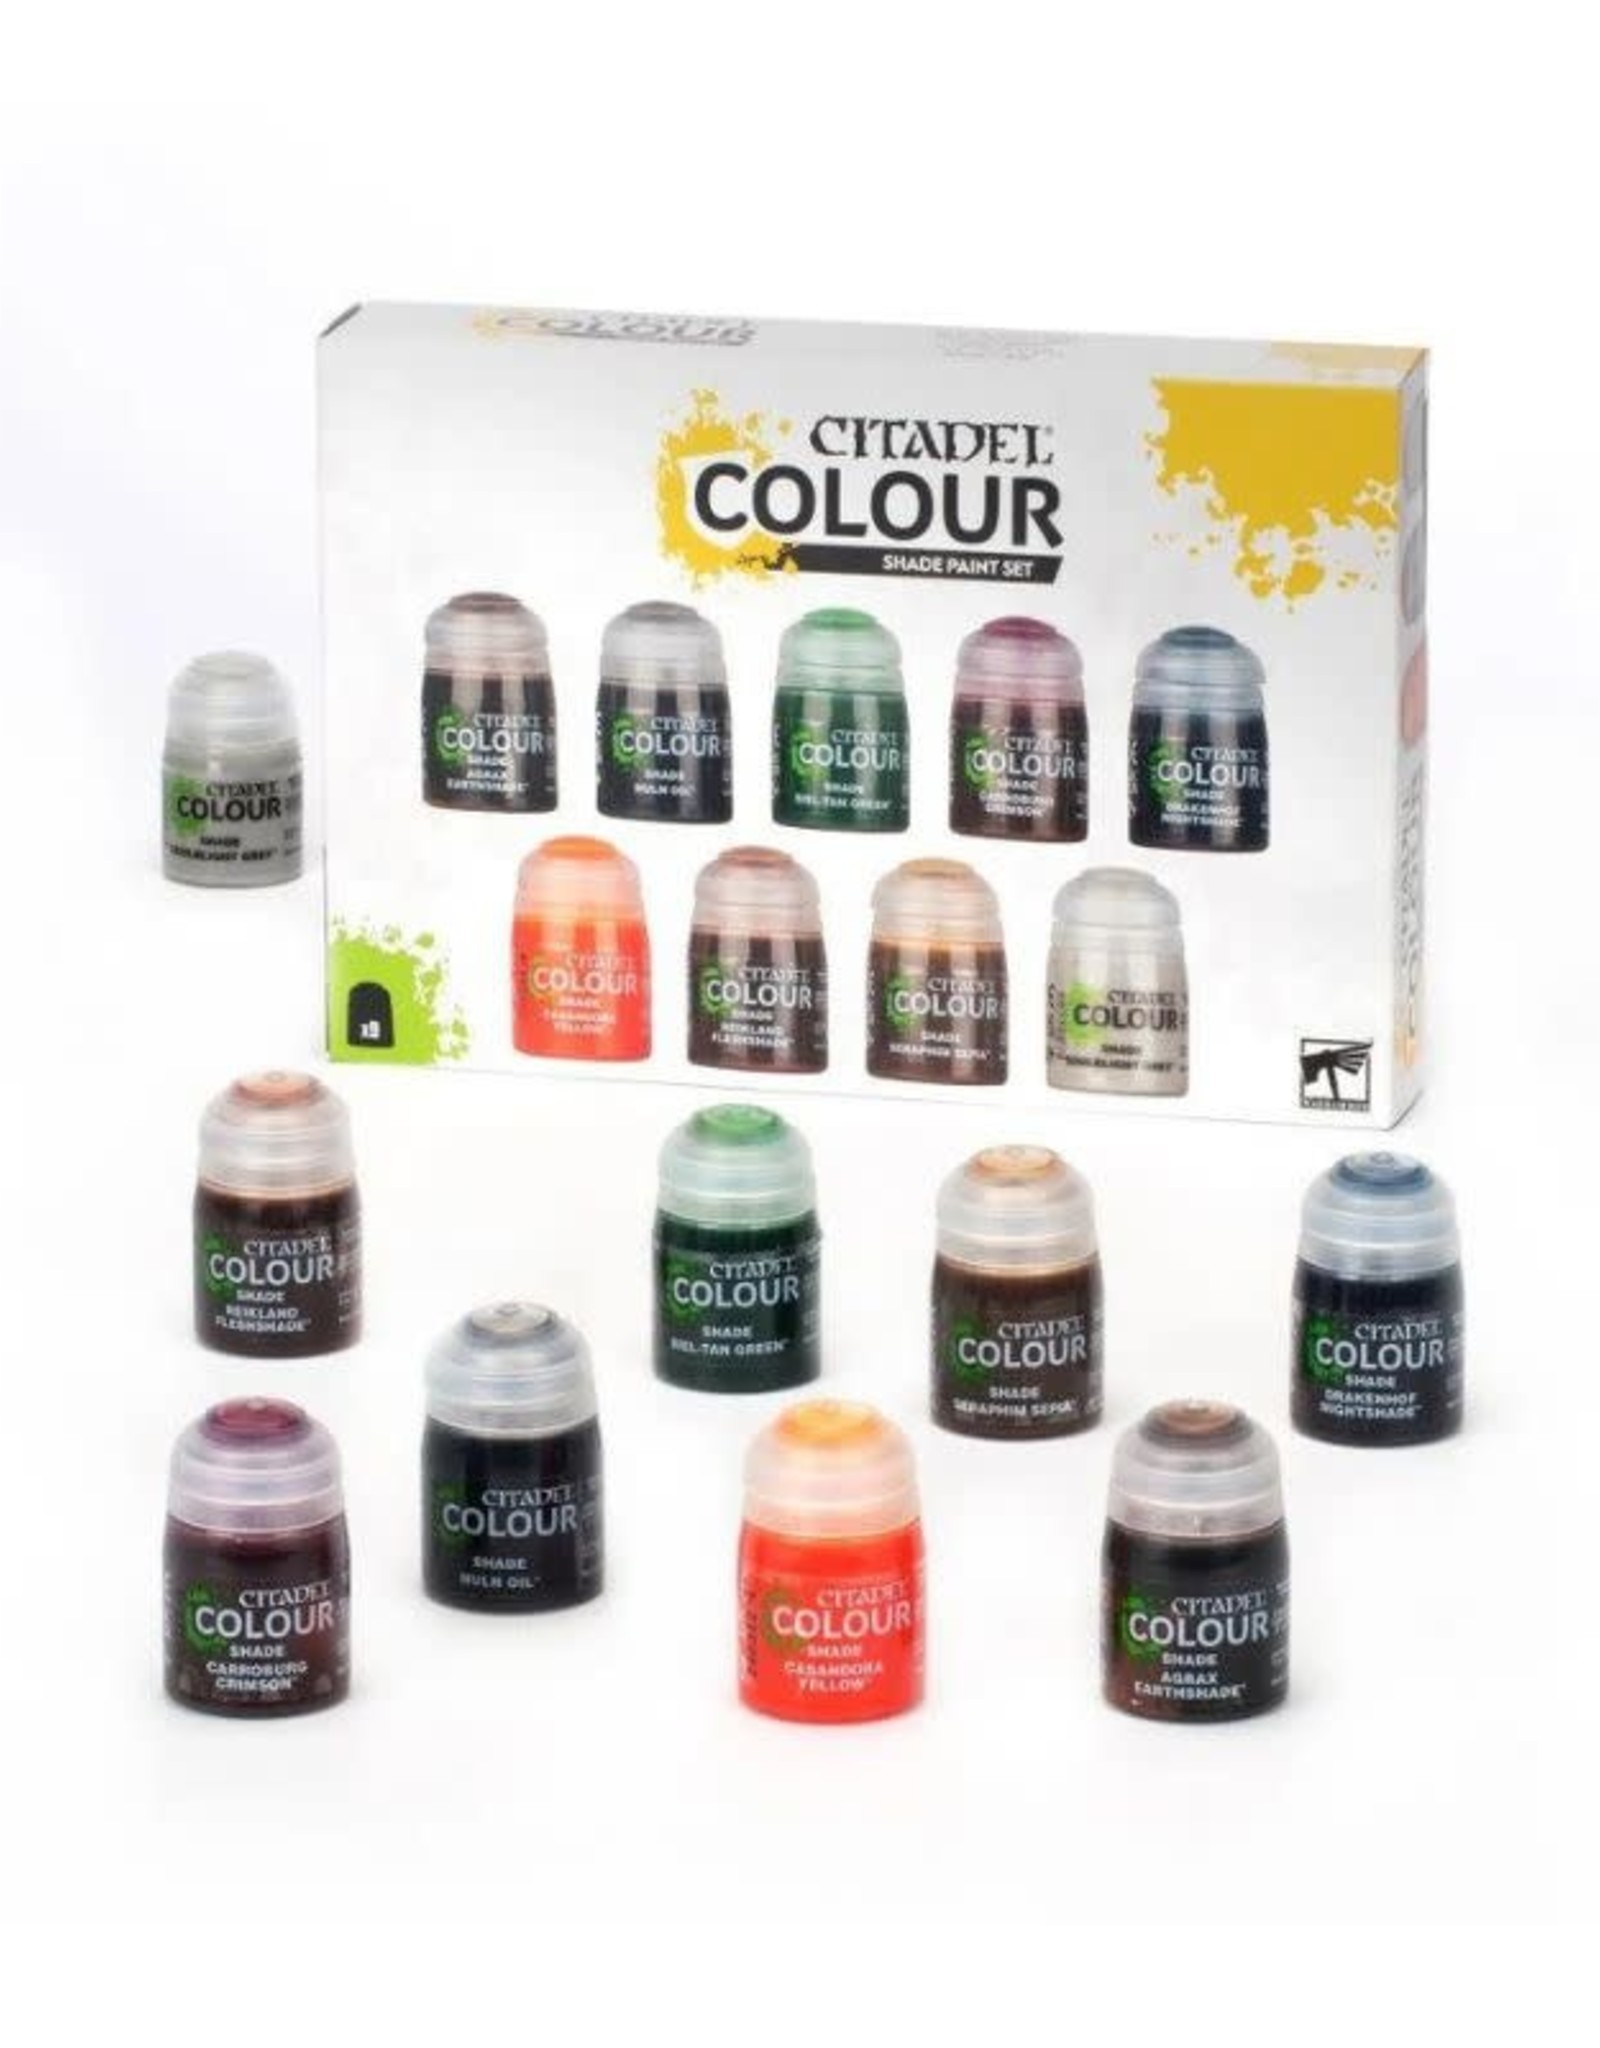 https://cdn.shoplightspeed.com/shops/635239/files/54634098/1600x2048x1/games-workshop-citadel-colour-shade-paint-set.jpg